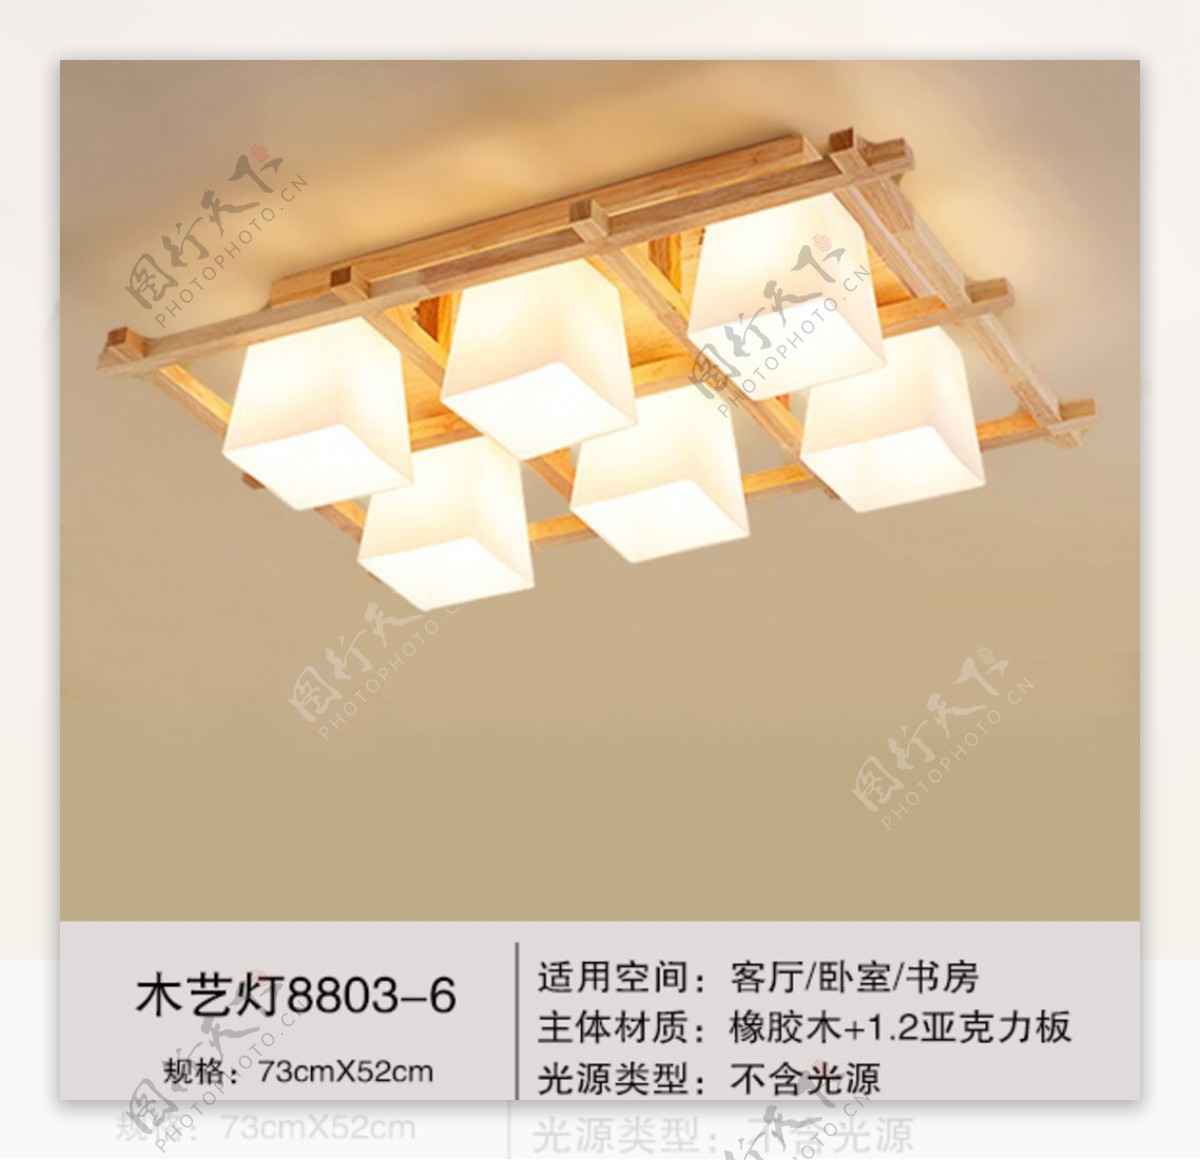 新中式灯具木艺淘宝主图模板